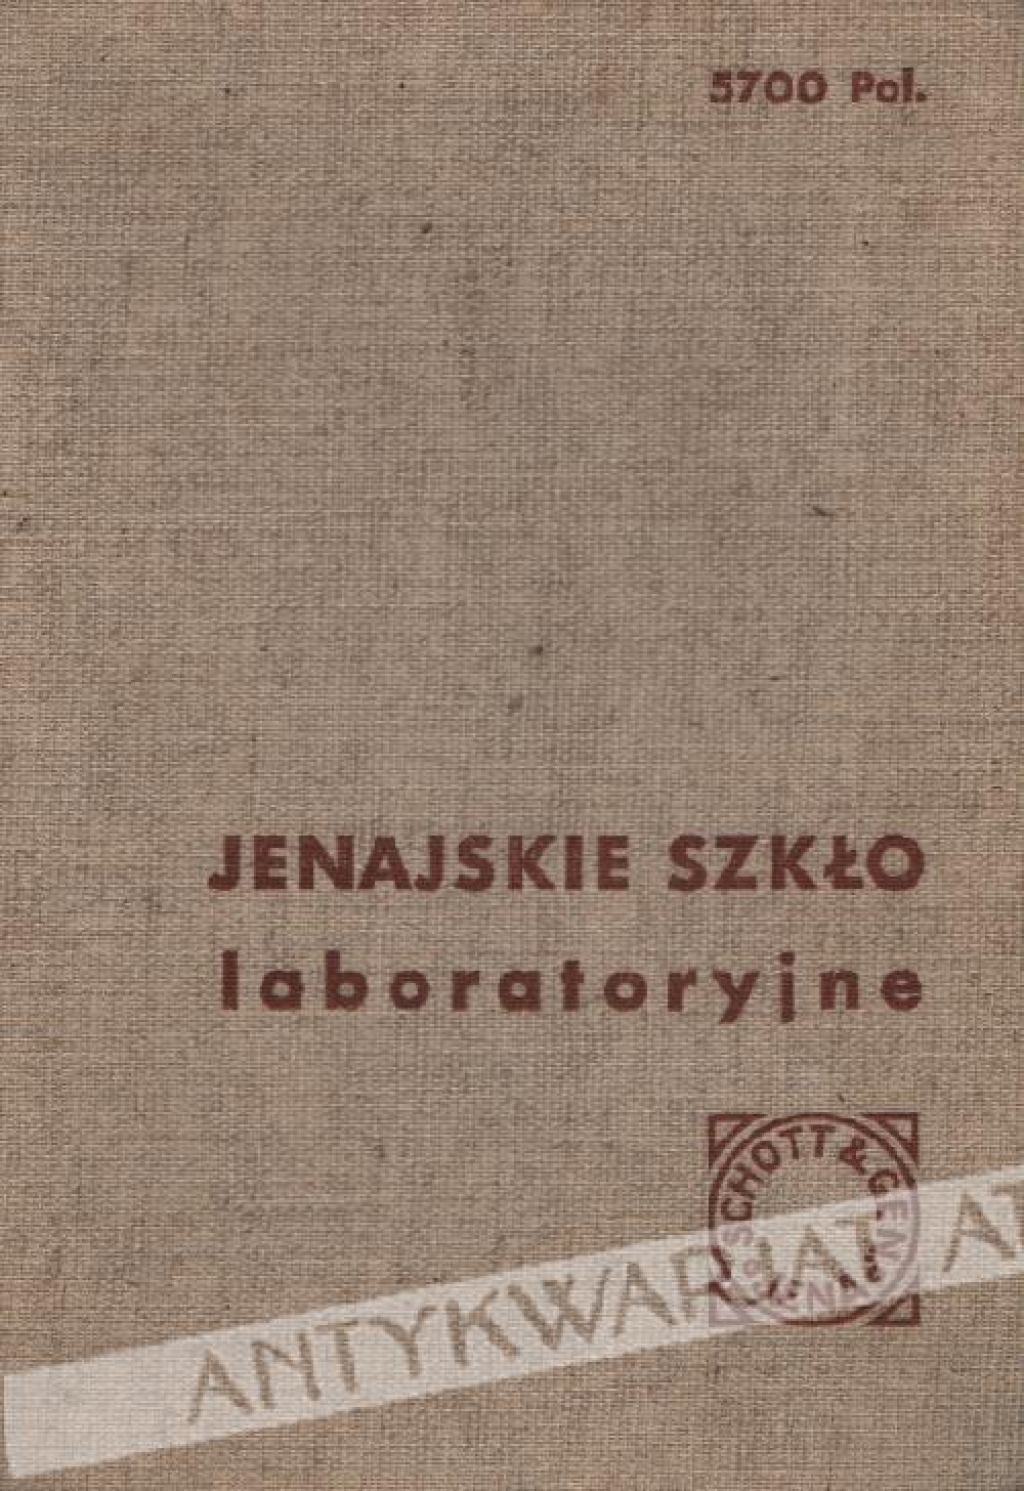 Jenajskie szkło laboratoryjne (katalog)